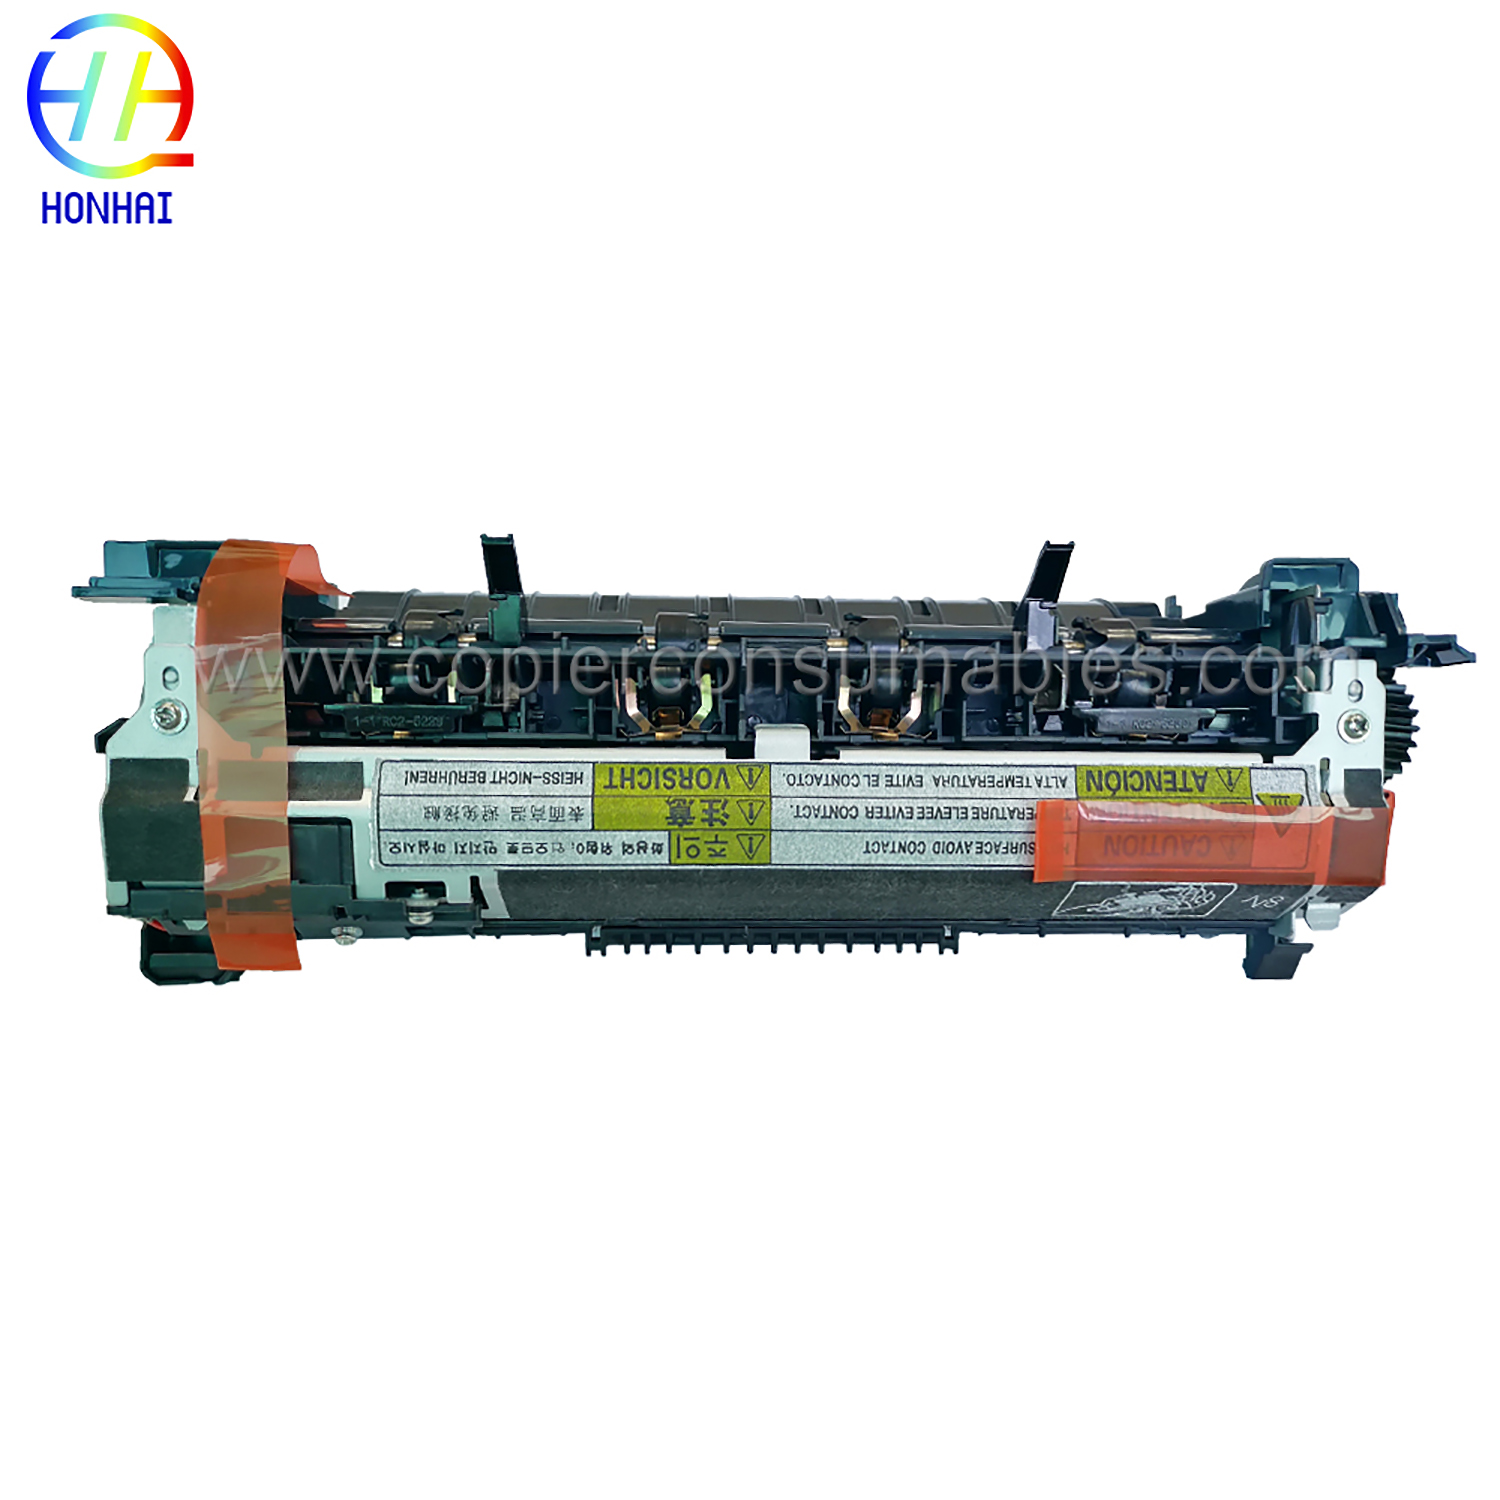 وحدة الصهر HP RM1-8395-000 - 110 120 فولت (4)